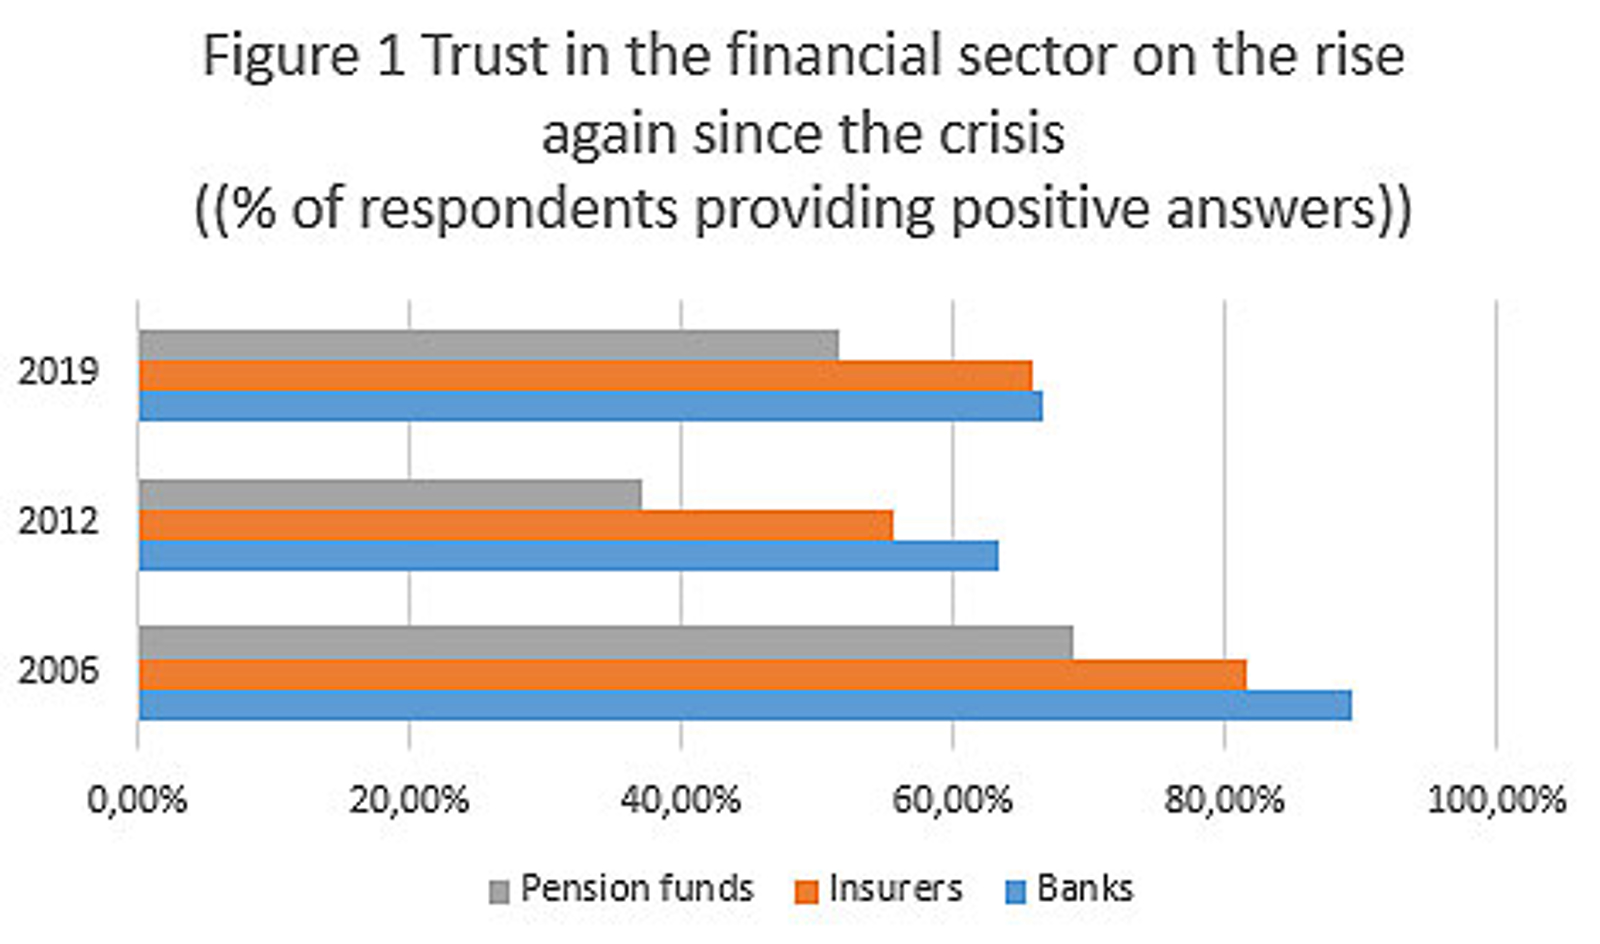 Figure 1 trust in financial sector